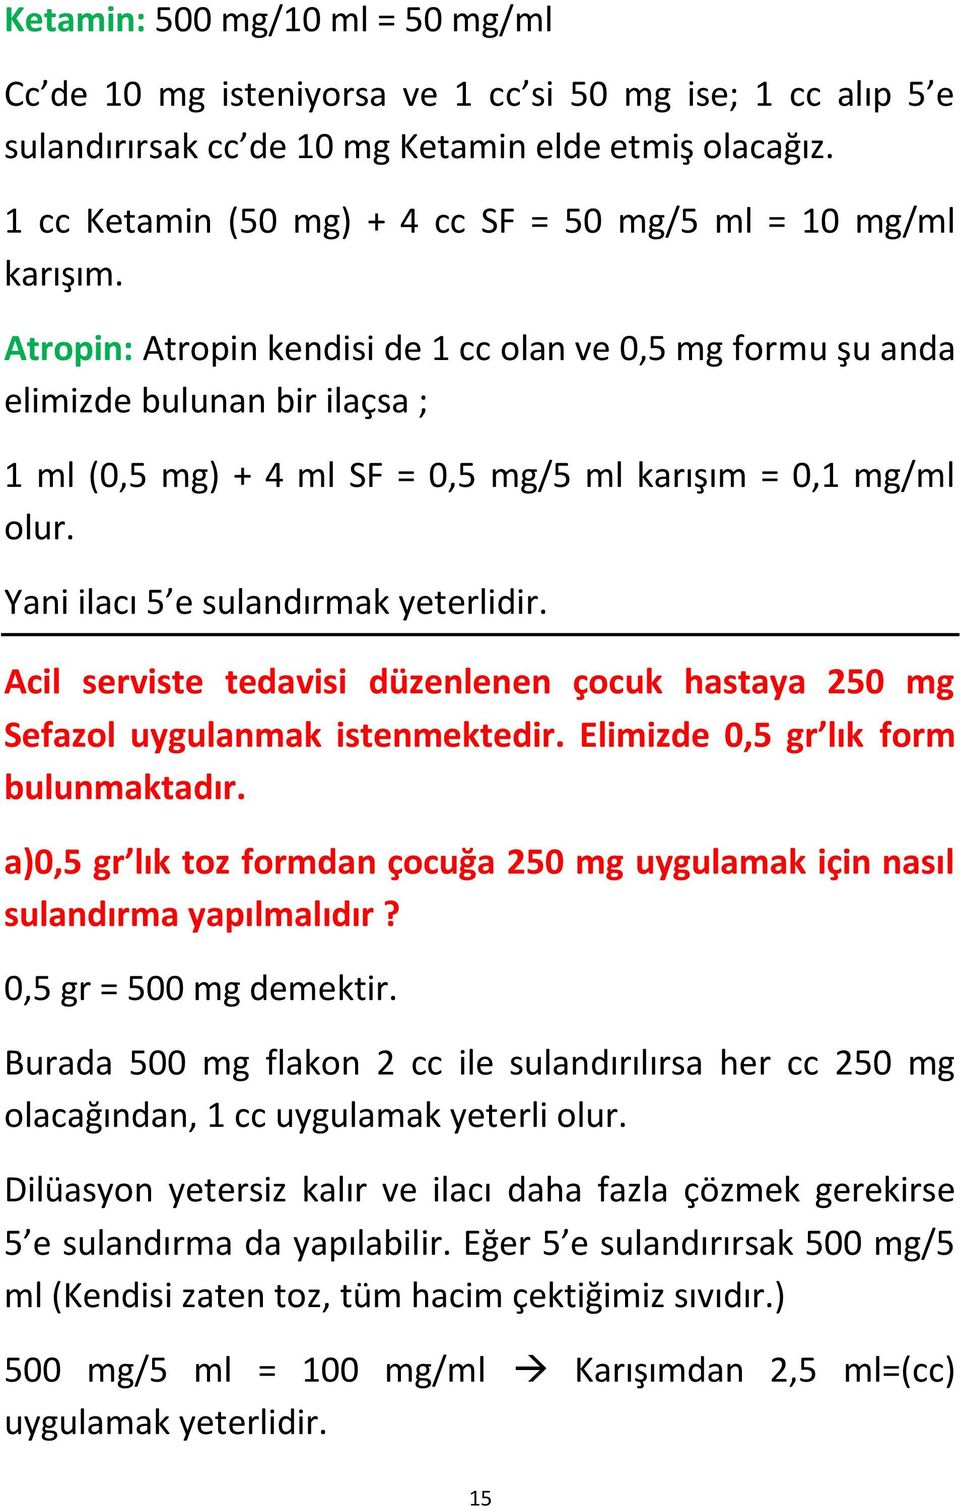 Atropin: Atropin kendisi de 1 cc olan ve 0,5 mg formu şu anda elimizde bulunan bir ilaçsa ; 1 ml (0,5 mg) + 4 ml SF = 0,5 mg/5 ml karışım = 0,1 mg/ml olur. Yani ilacı 5 e sulandırmak yeterlidir.